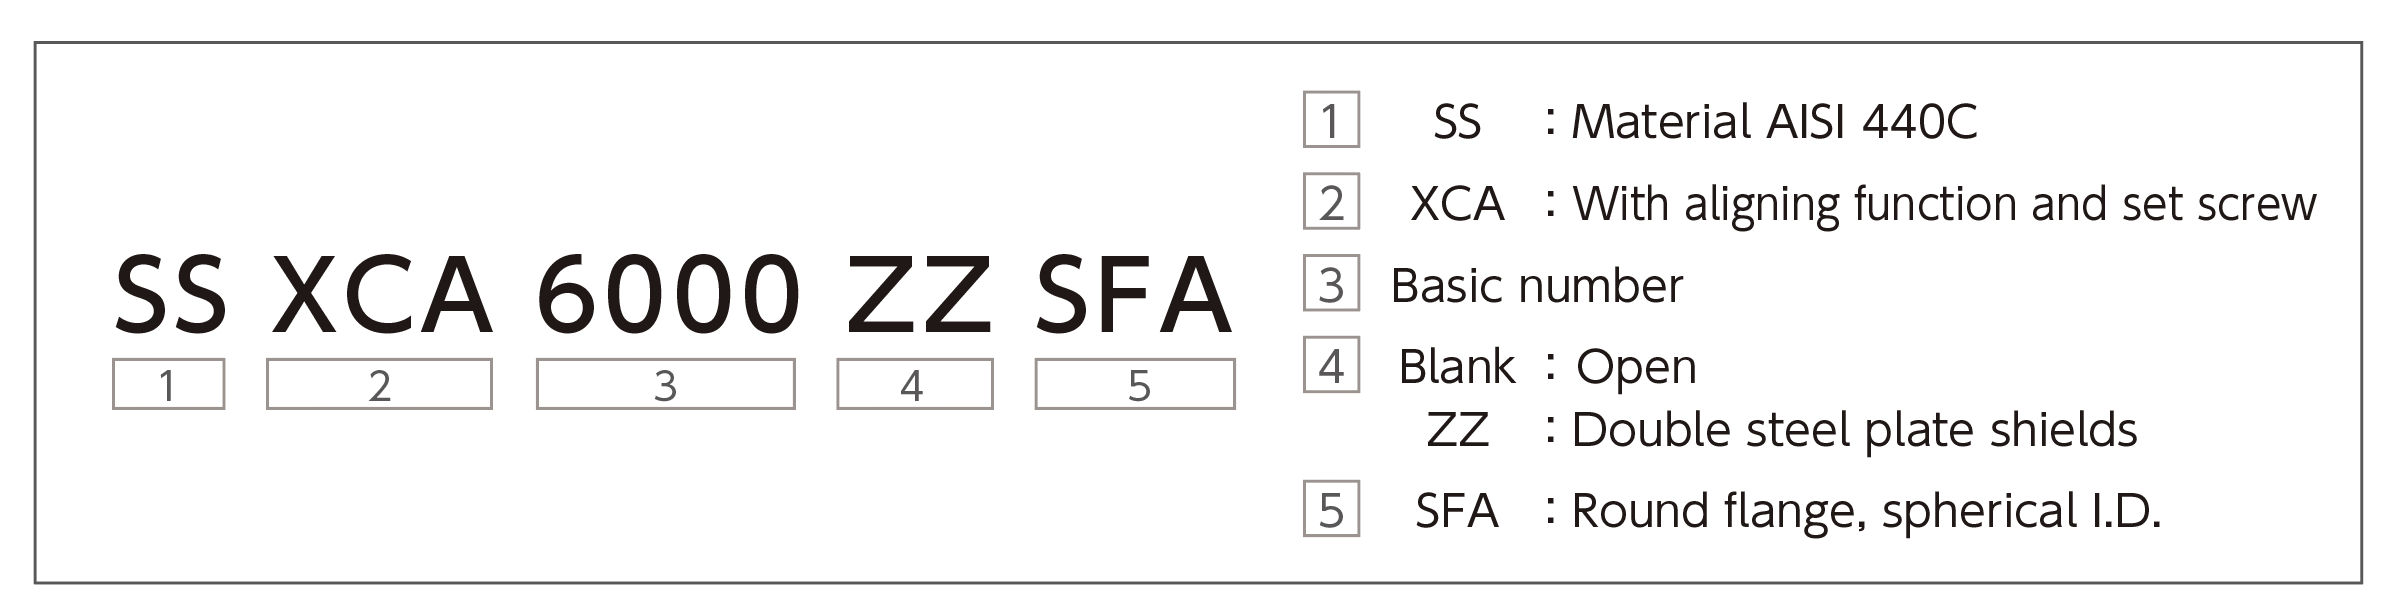 sf-ssxca-sunpo-zu-20202-e